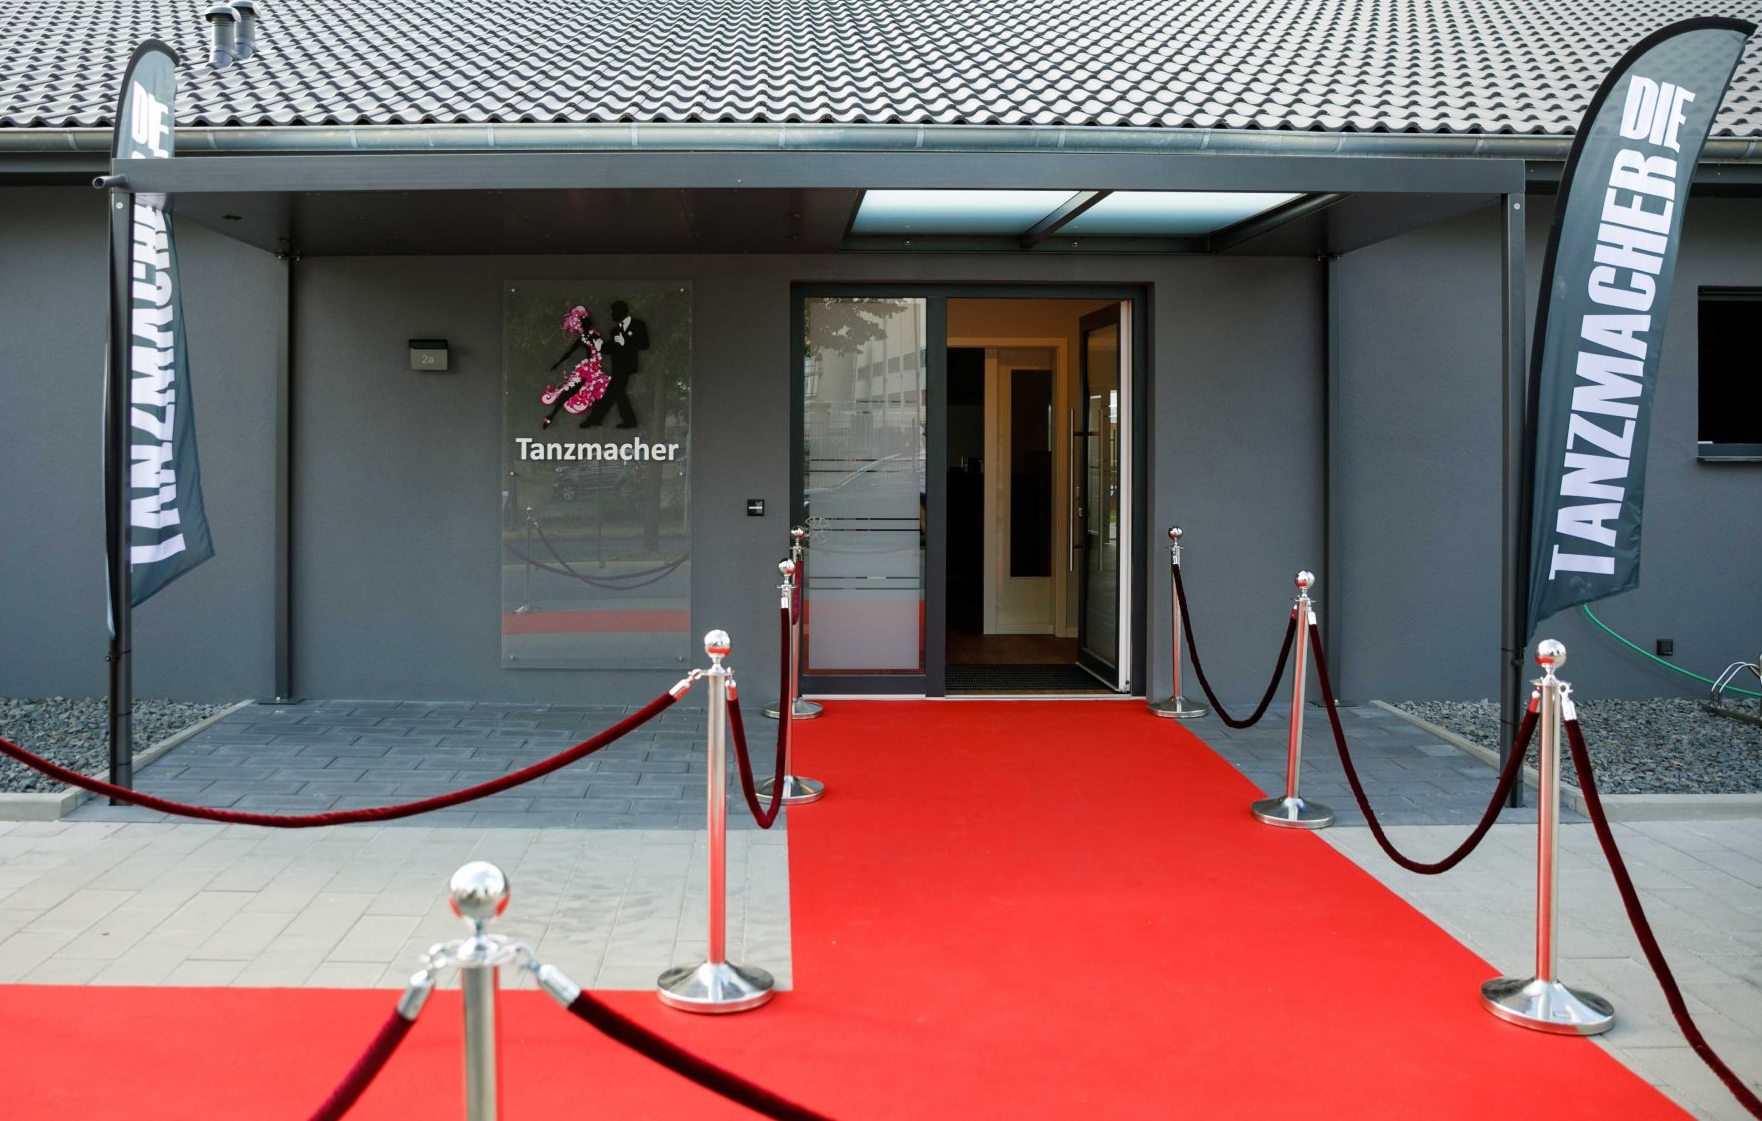 Neueröffnete Tanzschule mit rotem Teppich